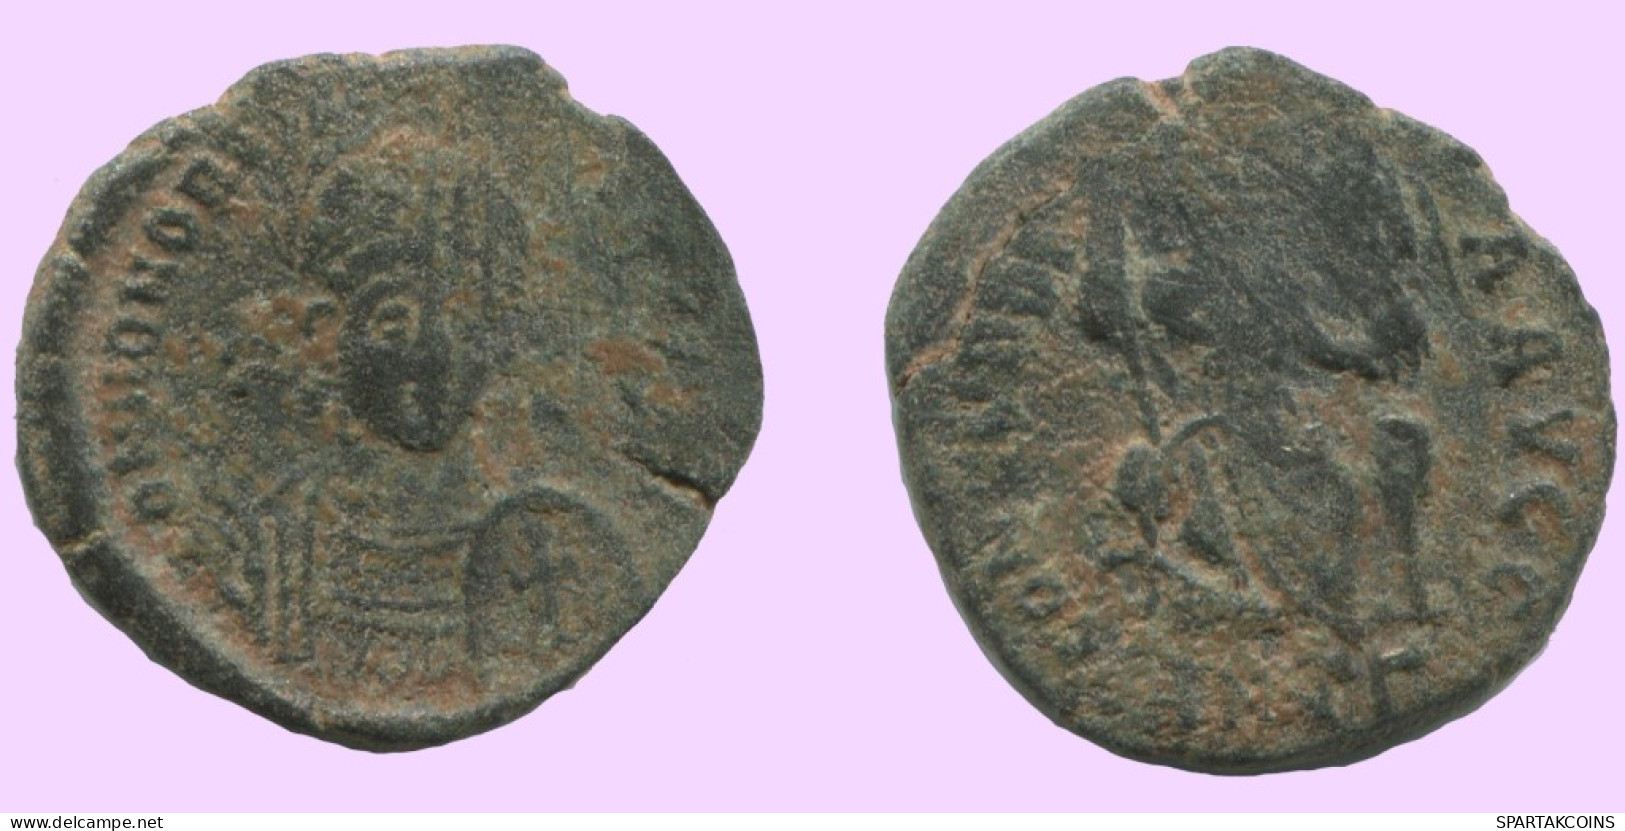 Authentische Antike Spätrömische Münze RÖMISCHE Münze 2.1g/18mm #ANT2434.14.D.A - Der Spätrömanischen Reich (363 / 476)